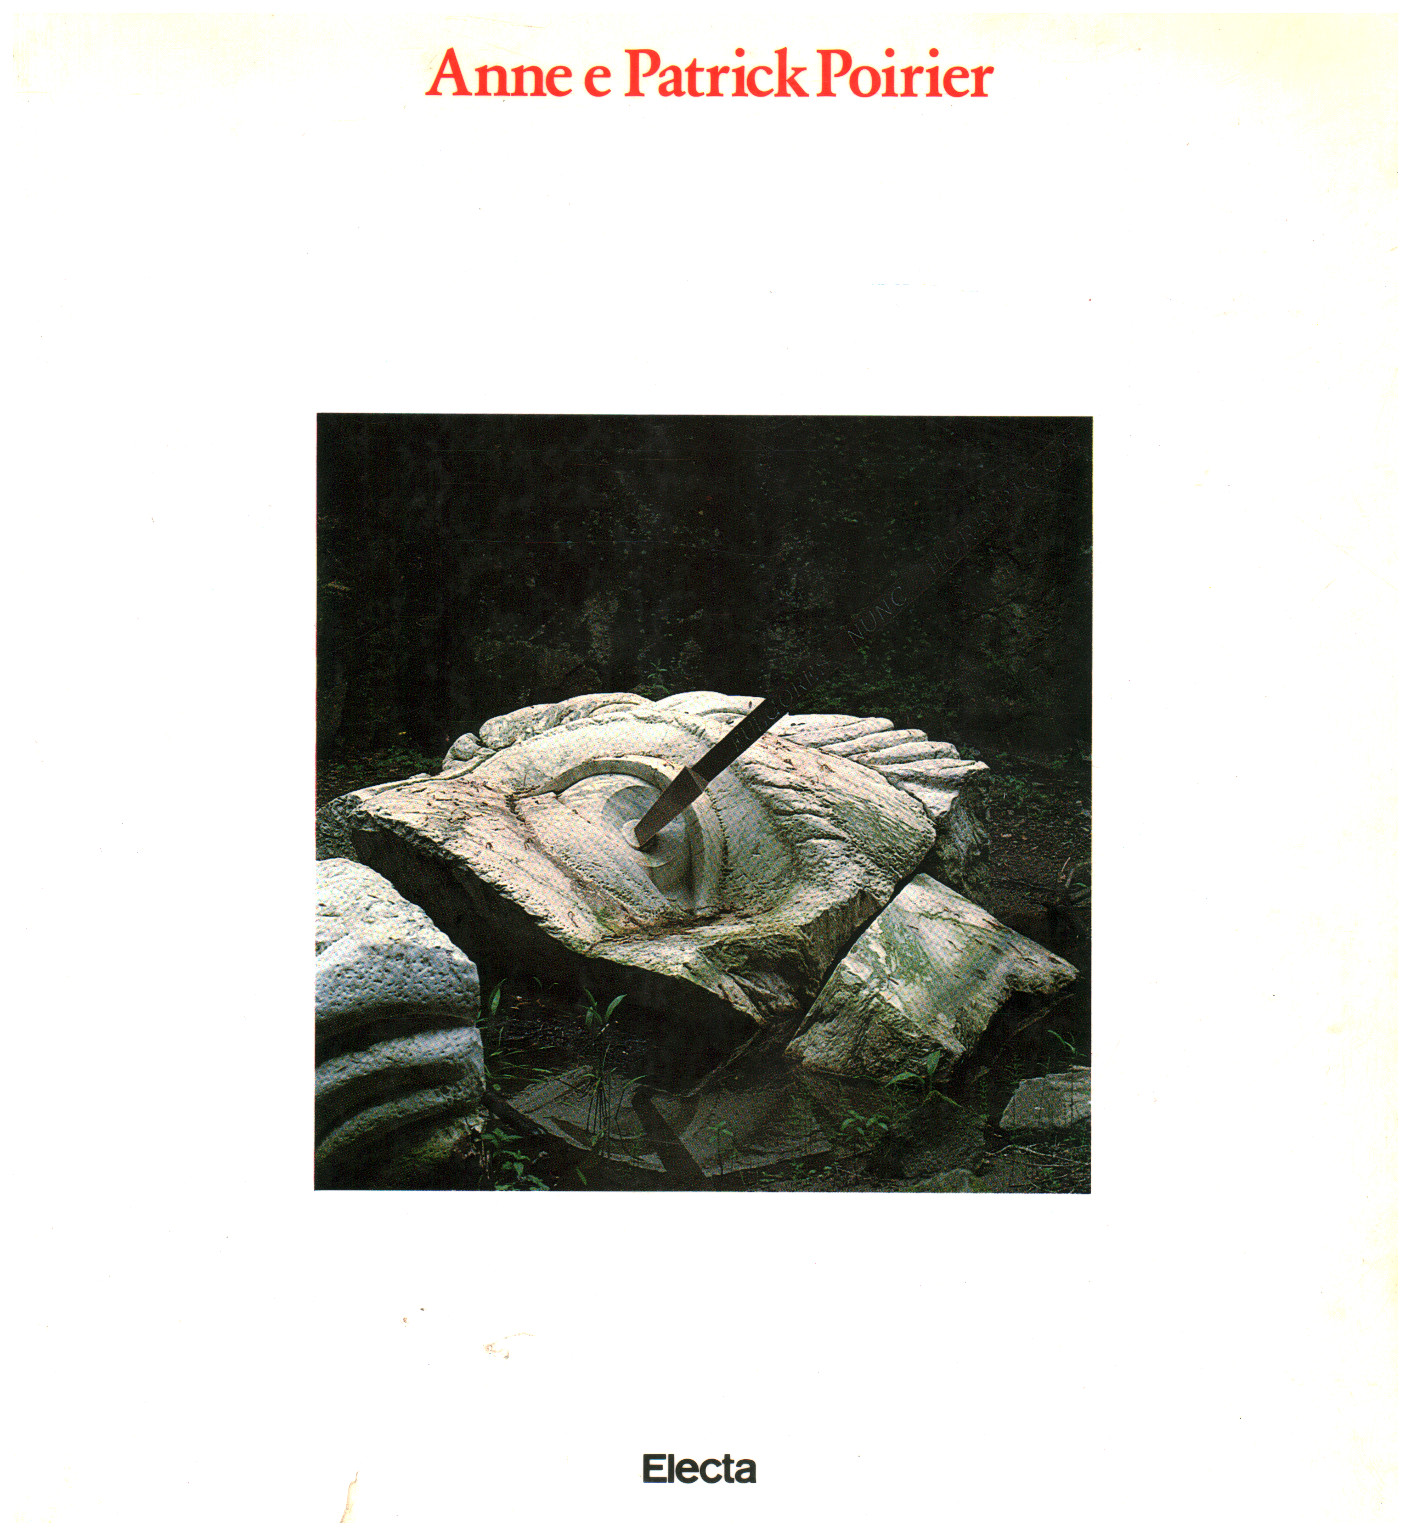 Anne e Patrick Poirier: Architettura e mitologia, s.a.